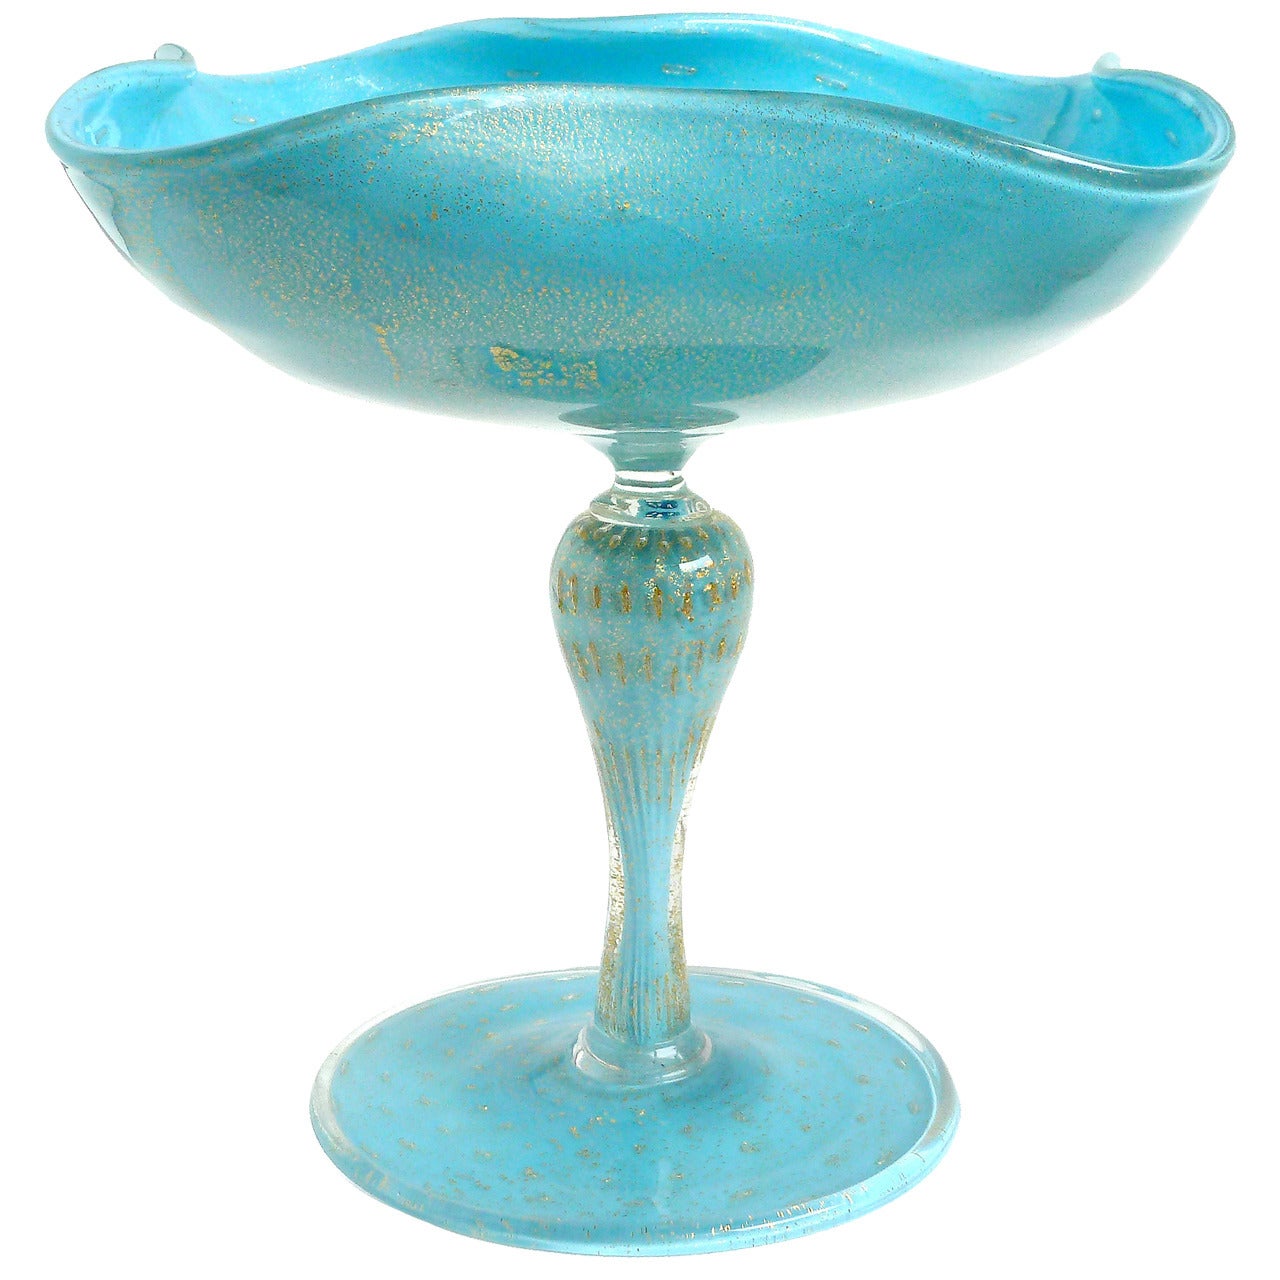 Alfredo Barbini Murano Gold Flecks Blue Italian Art Glass Compote Candy Bowl